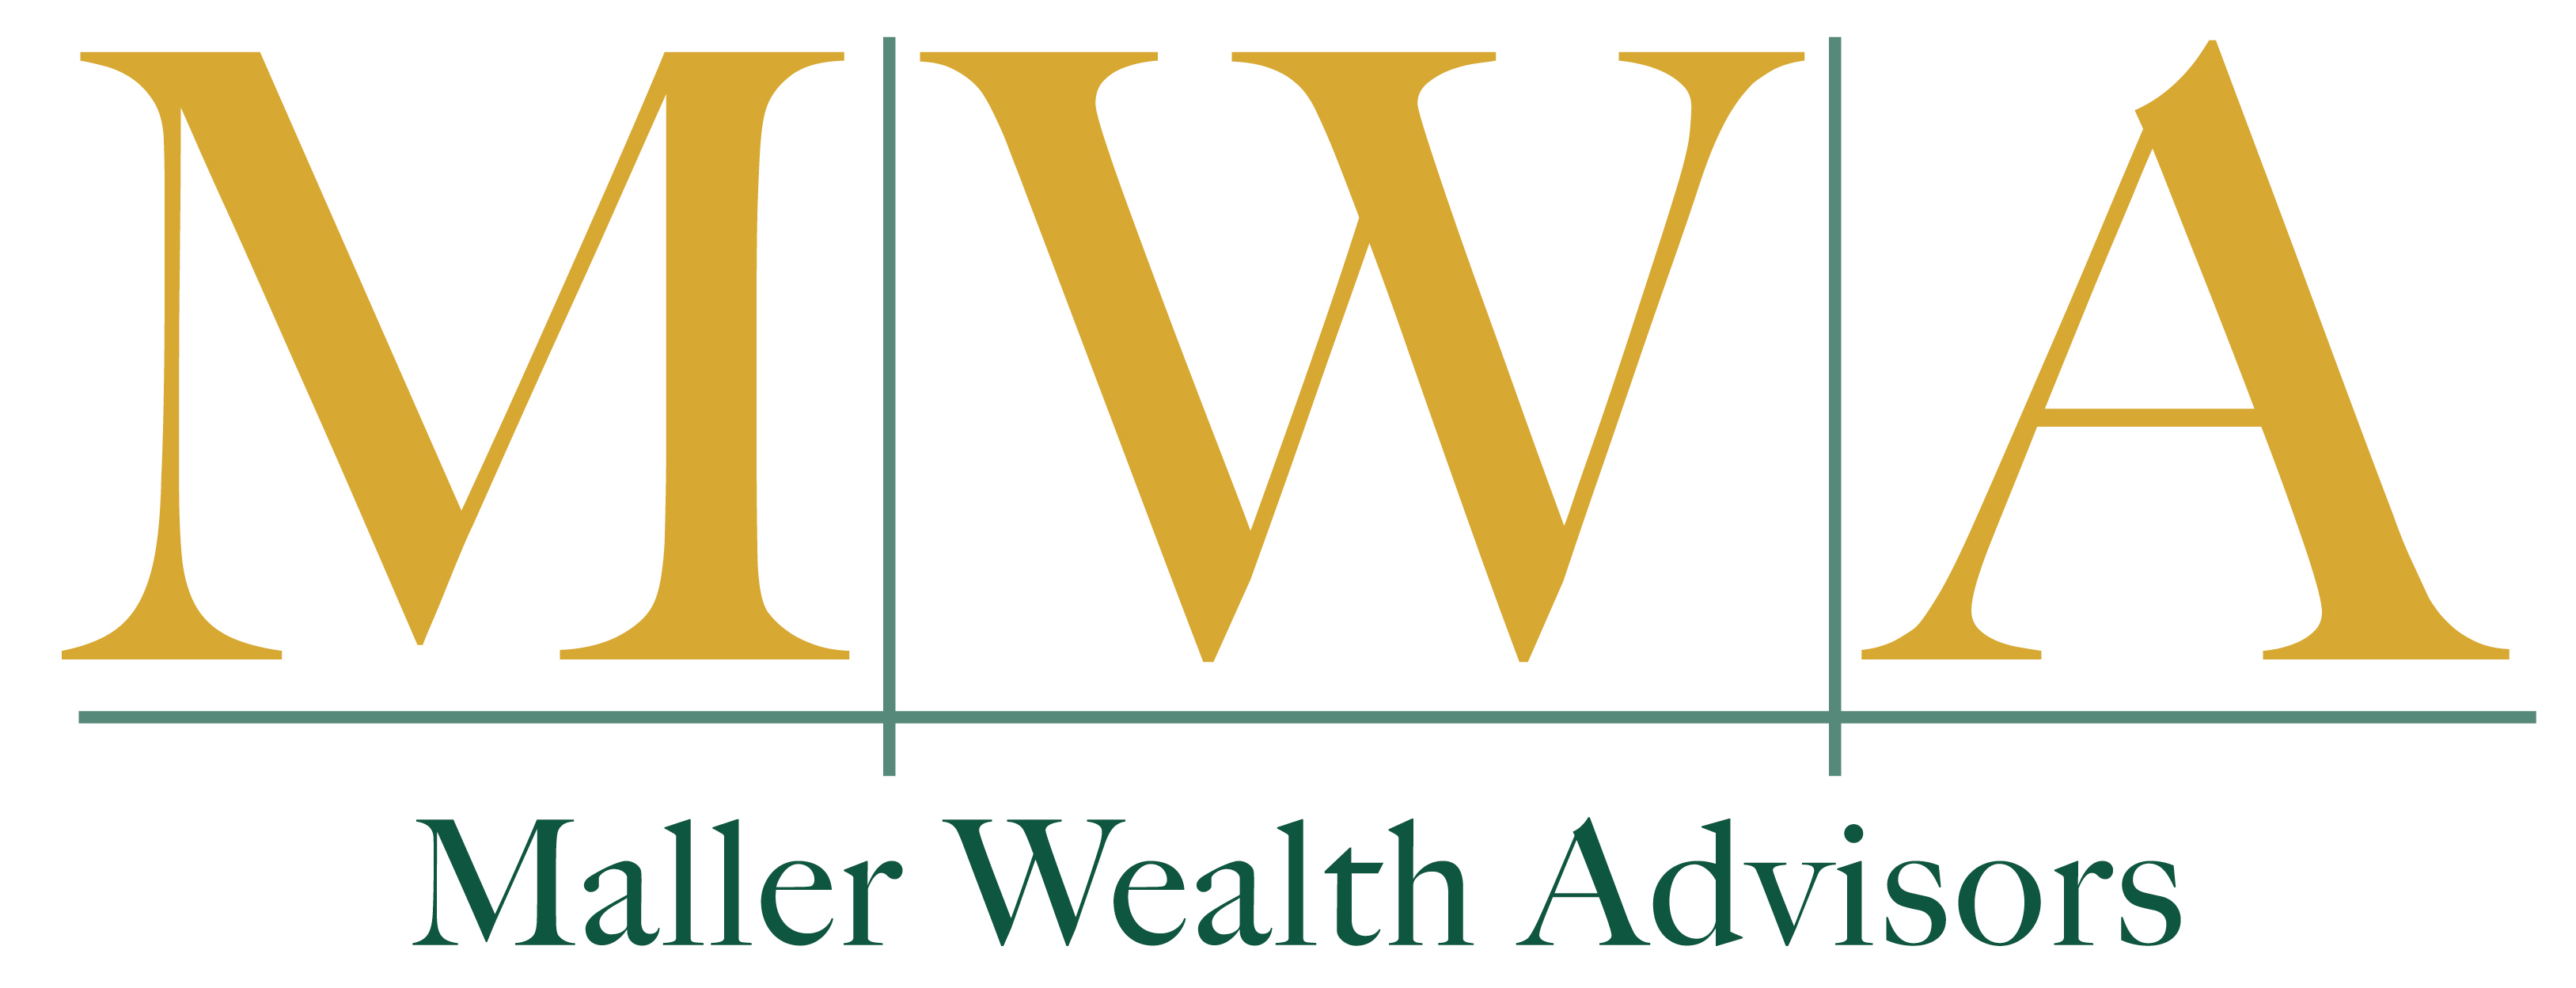 Maller Wealth Advisors, Inc.